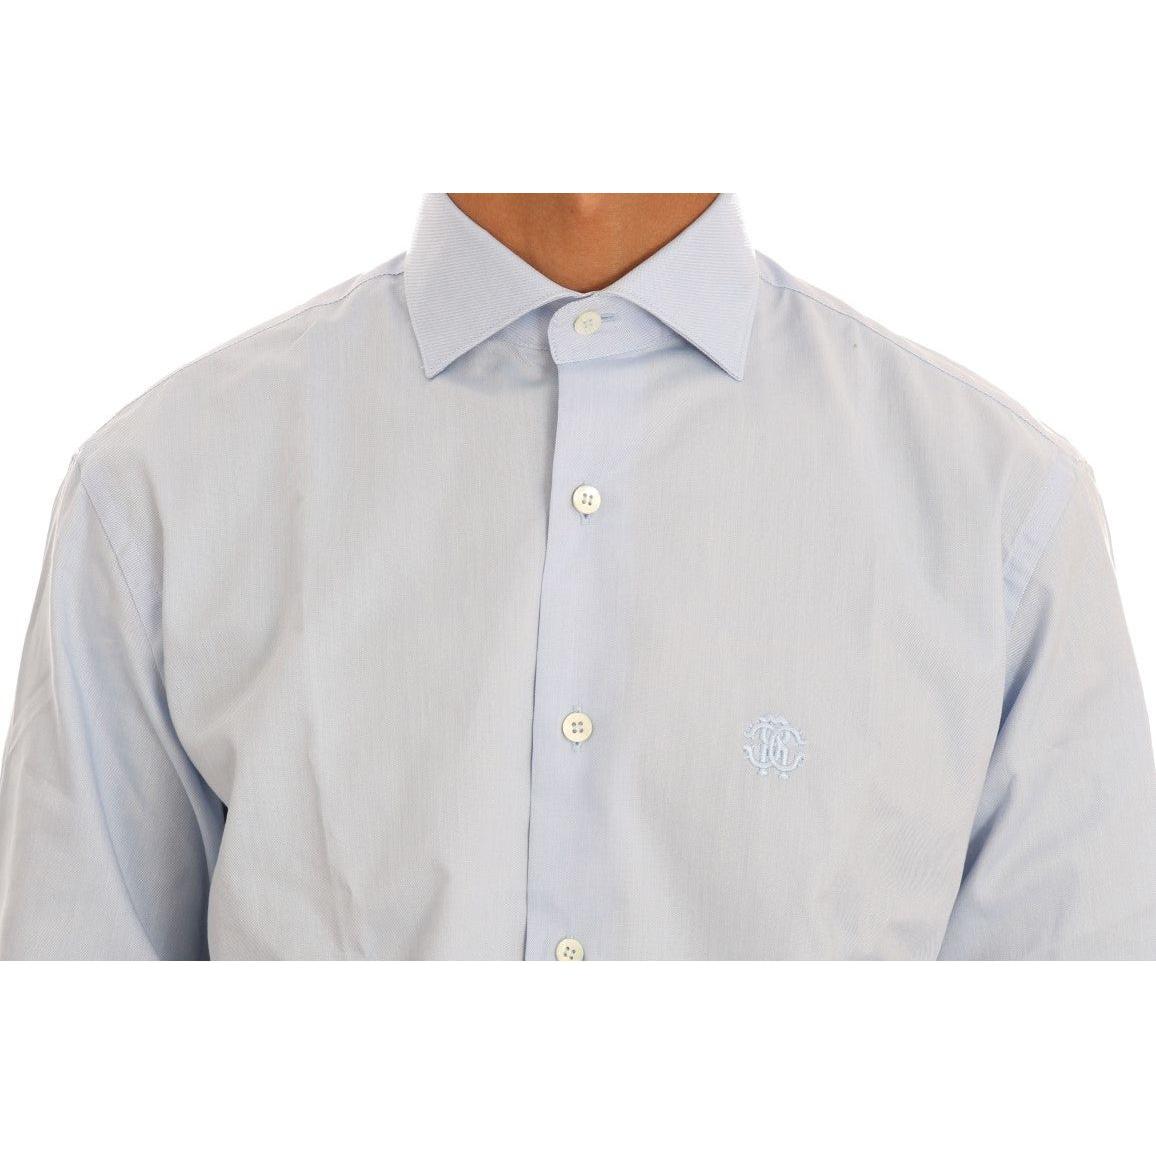 Cavalli Light Blue Cotton Dress Shirt light-blue-cotton-slim-fit-dress-shirt-2 461340-light-blue-cotton-slim-fit-dress-shirt-3-3.jpg